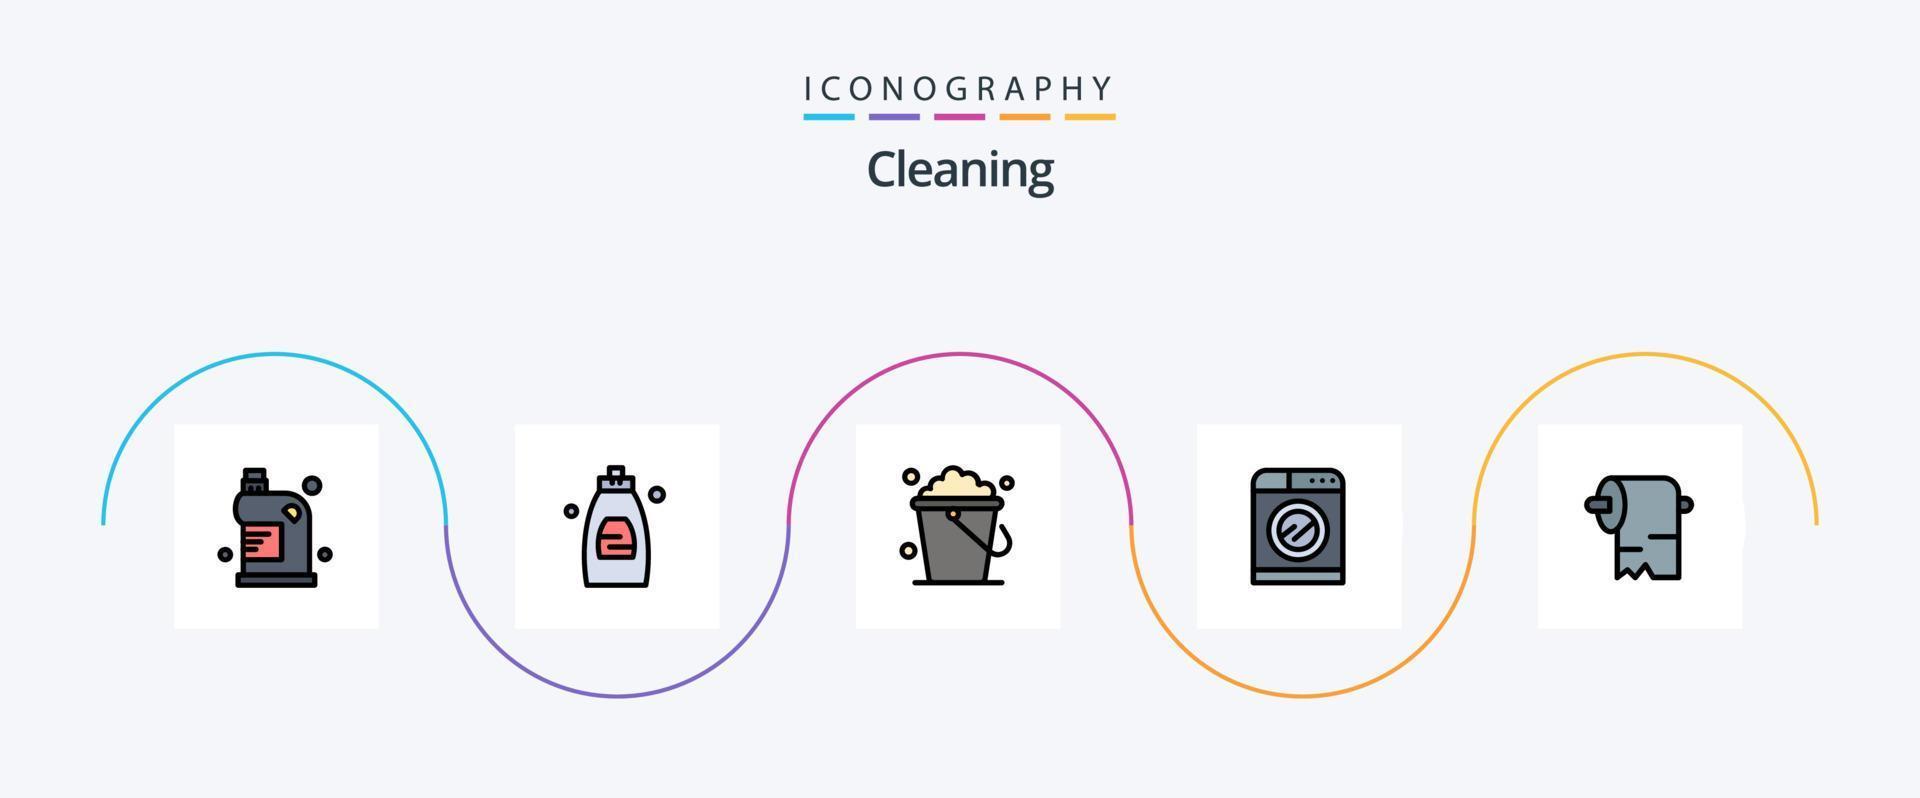 Reinigungslinie gefüllt flach 5 Icon Pack inklusive Reinigung. Waschen. Seife. Technologie. Heimat vektor